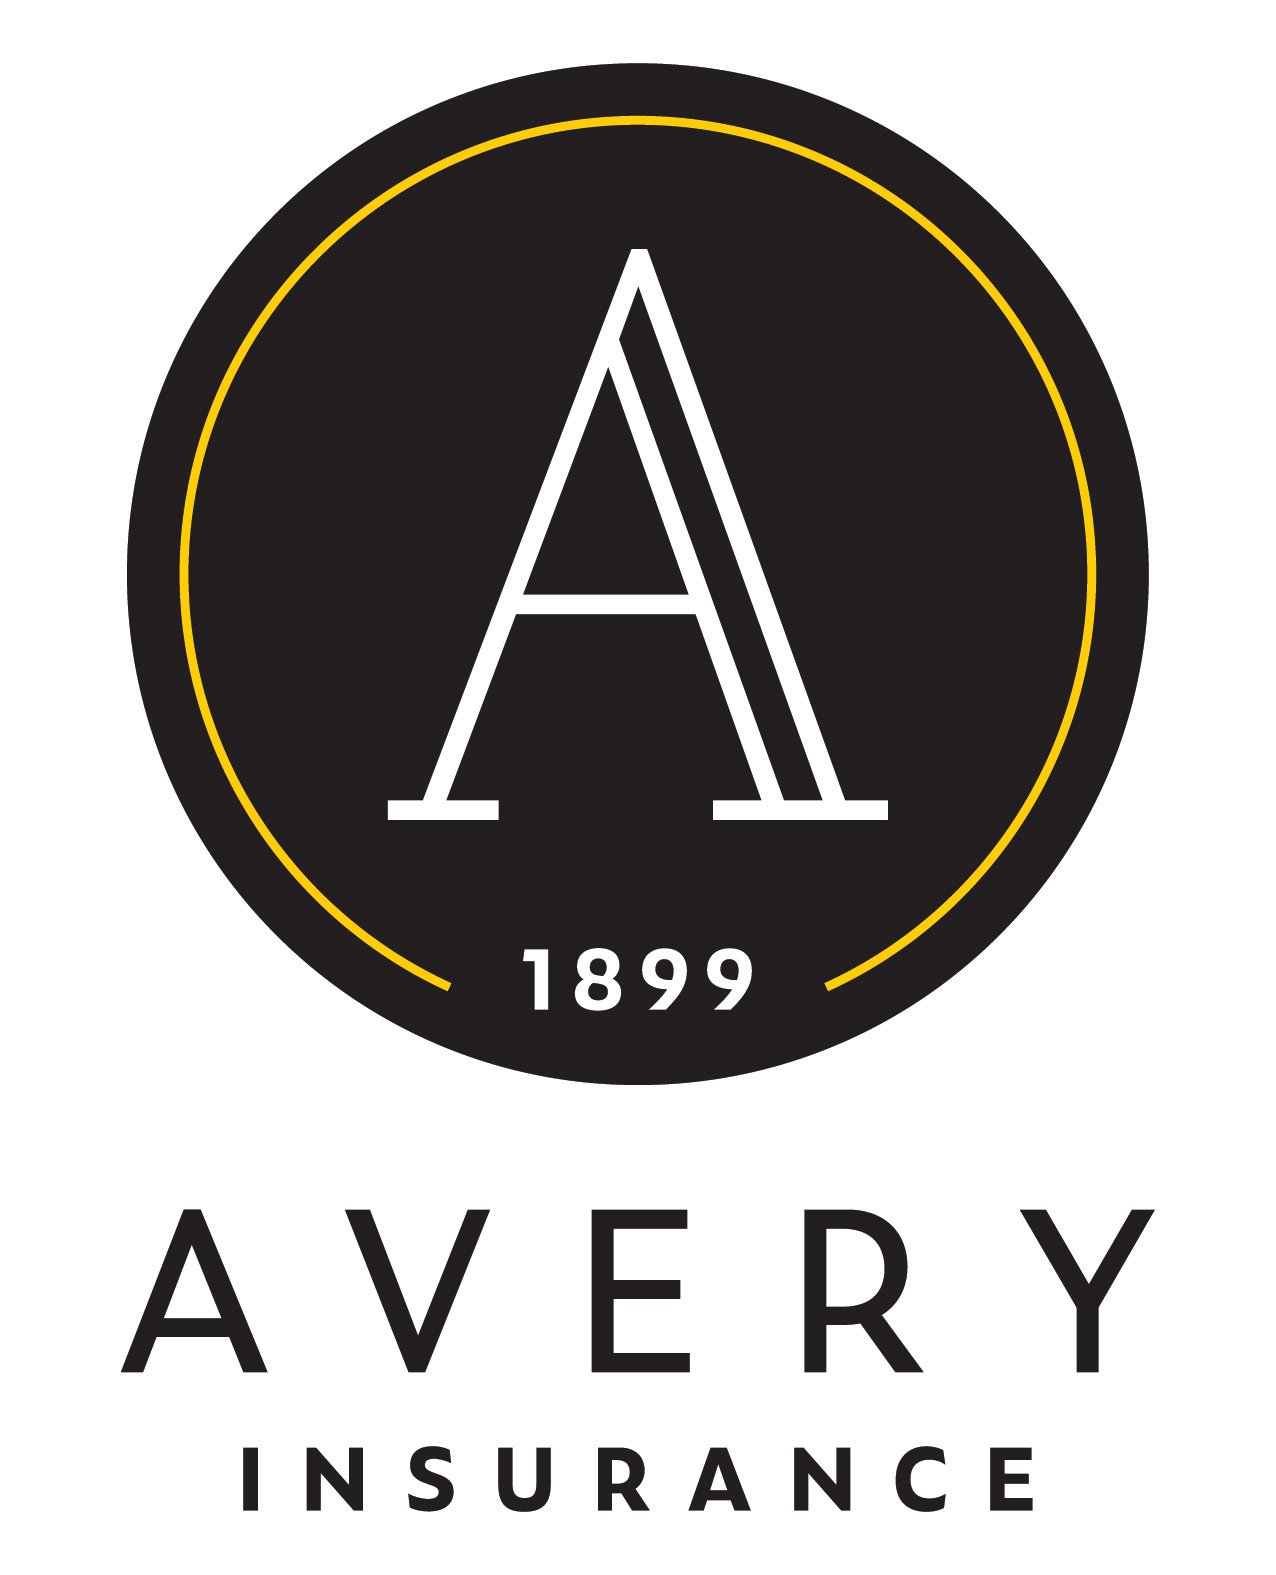 Avery-Insurance-Vert